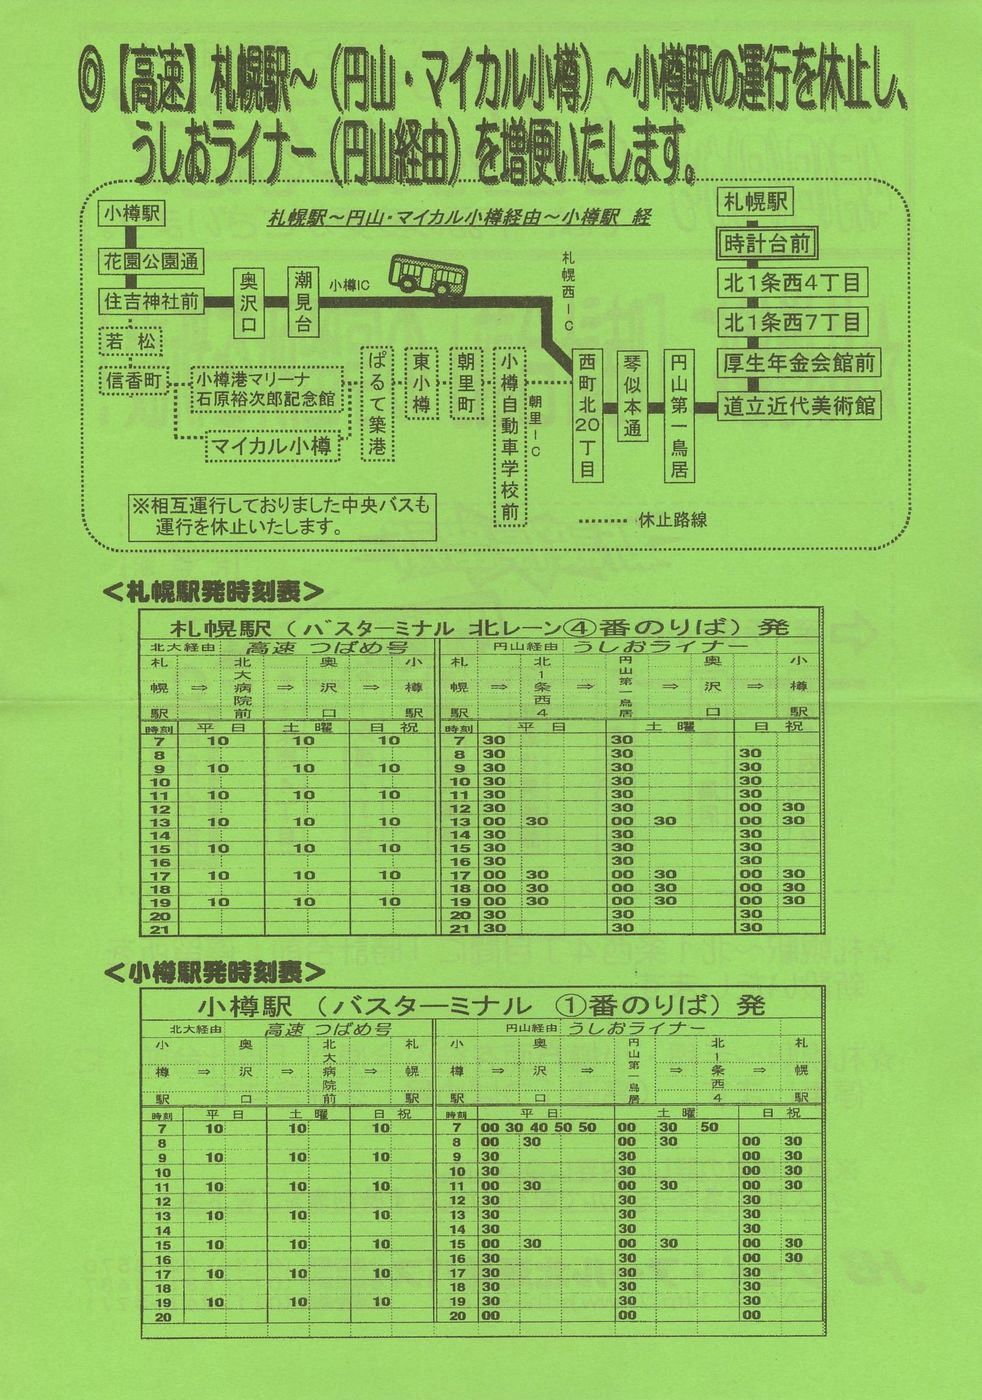 2001-04-01改正_ジェイ・アール北海道バス_札樽線時計台前増設・マイカル経由休止チラシ裏面